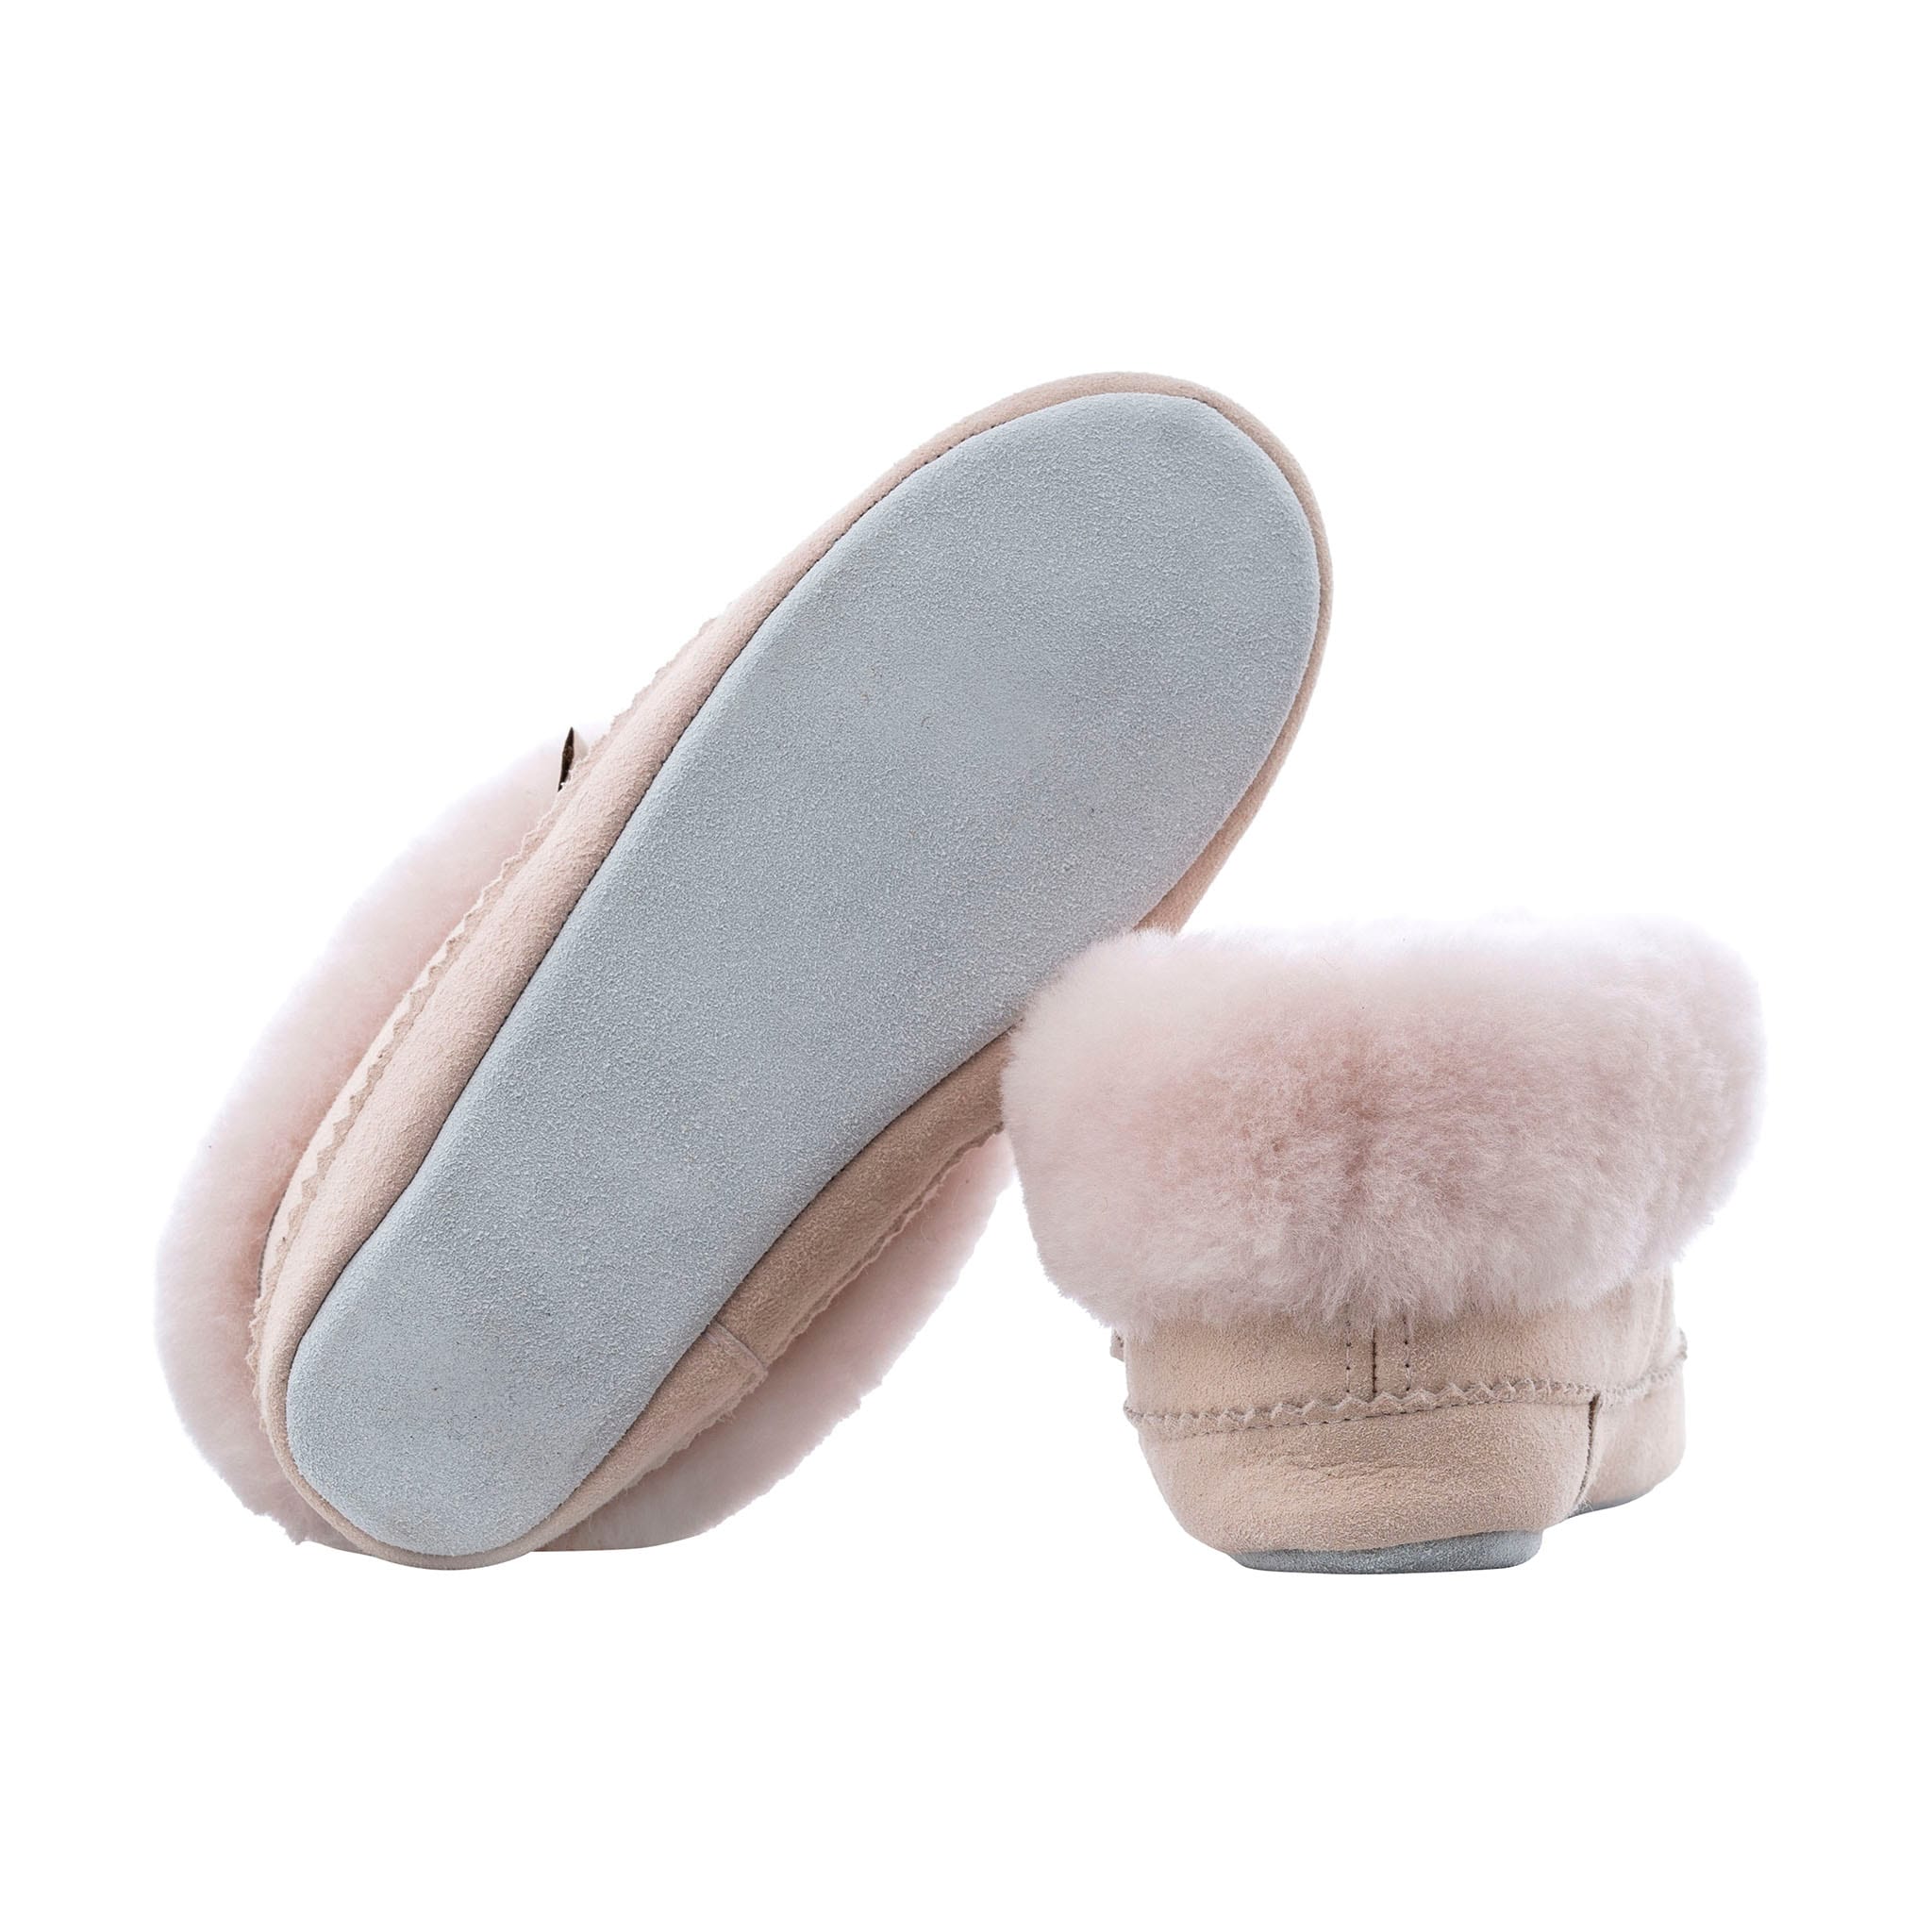 Piteå slippers, size 24-29